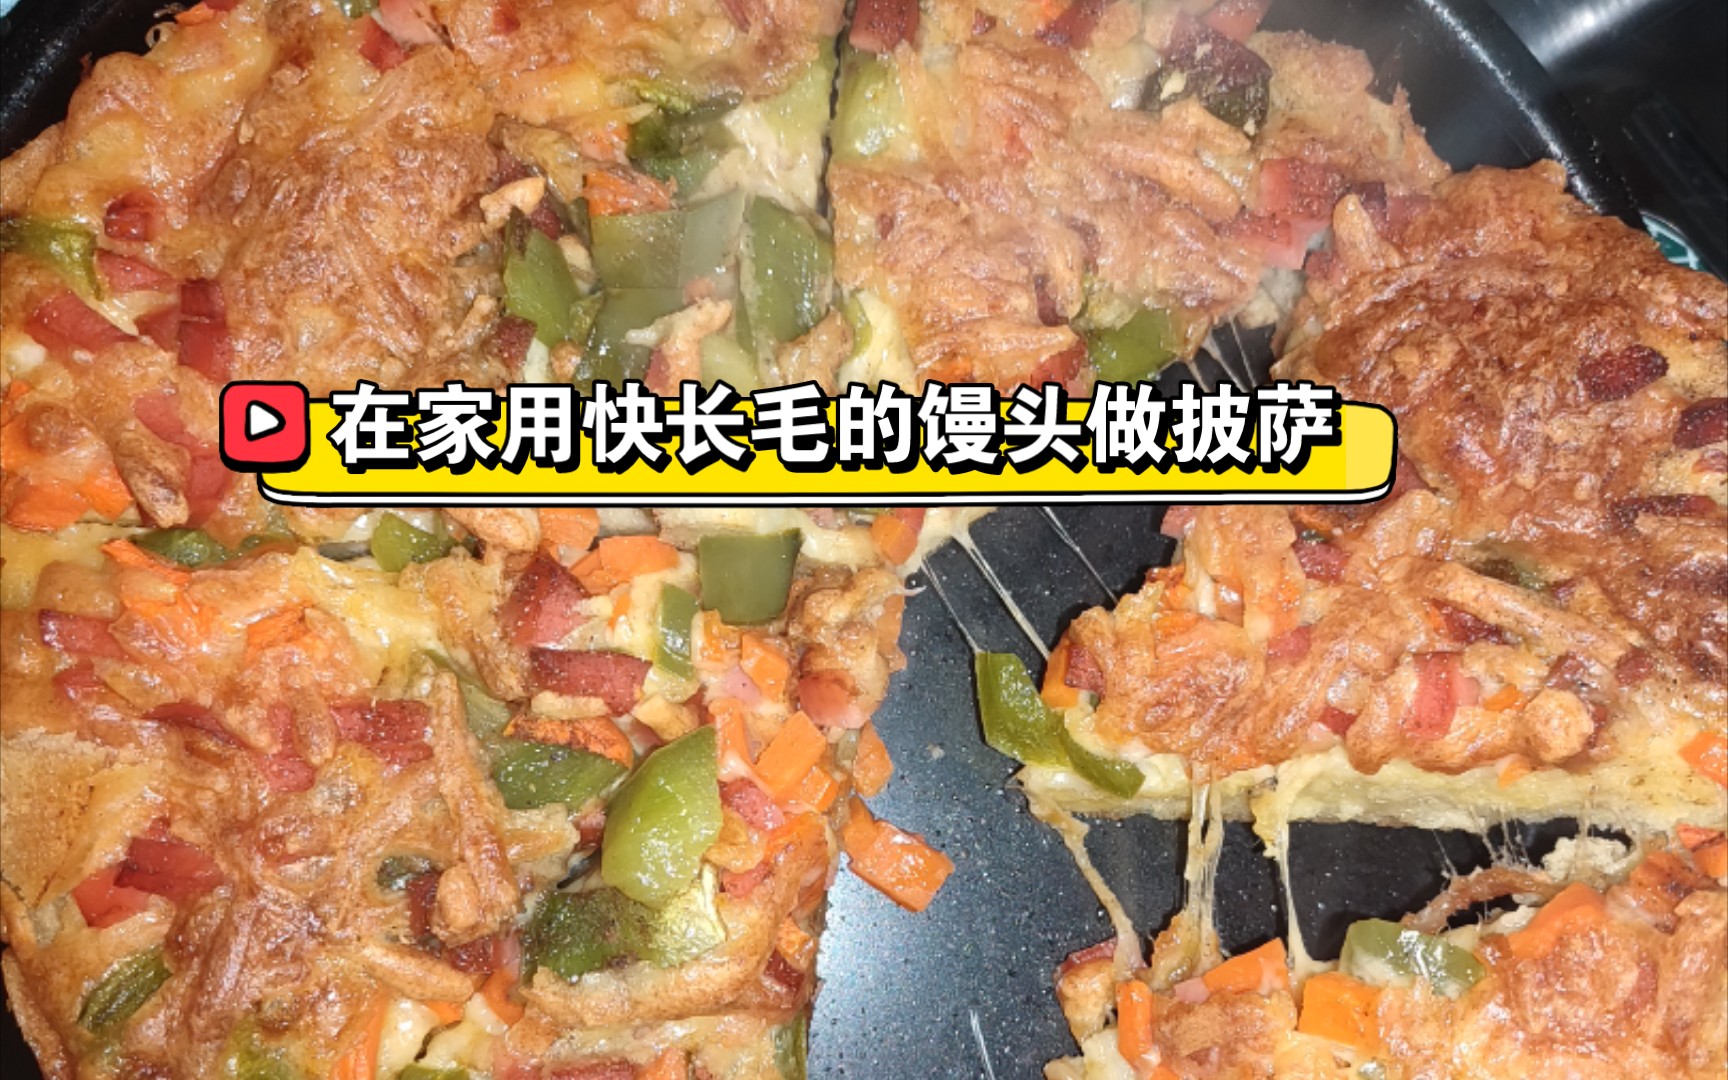 火腿馒头披萨怎么做_火腿馒头披萨的做法_小菁同学_豆果美食